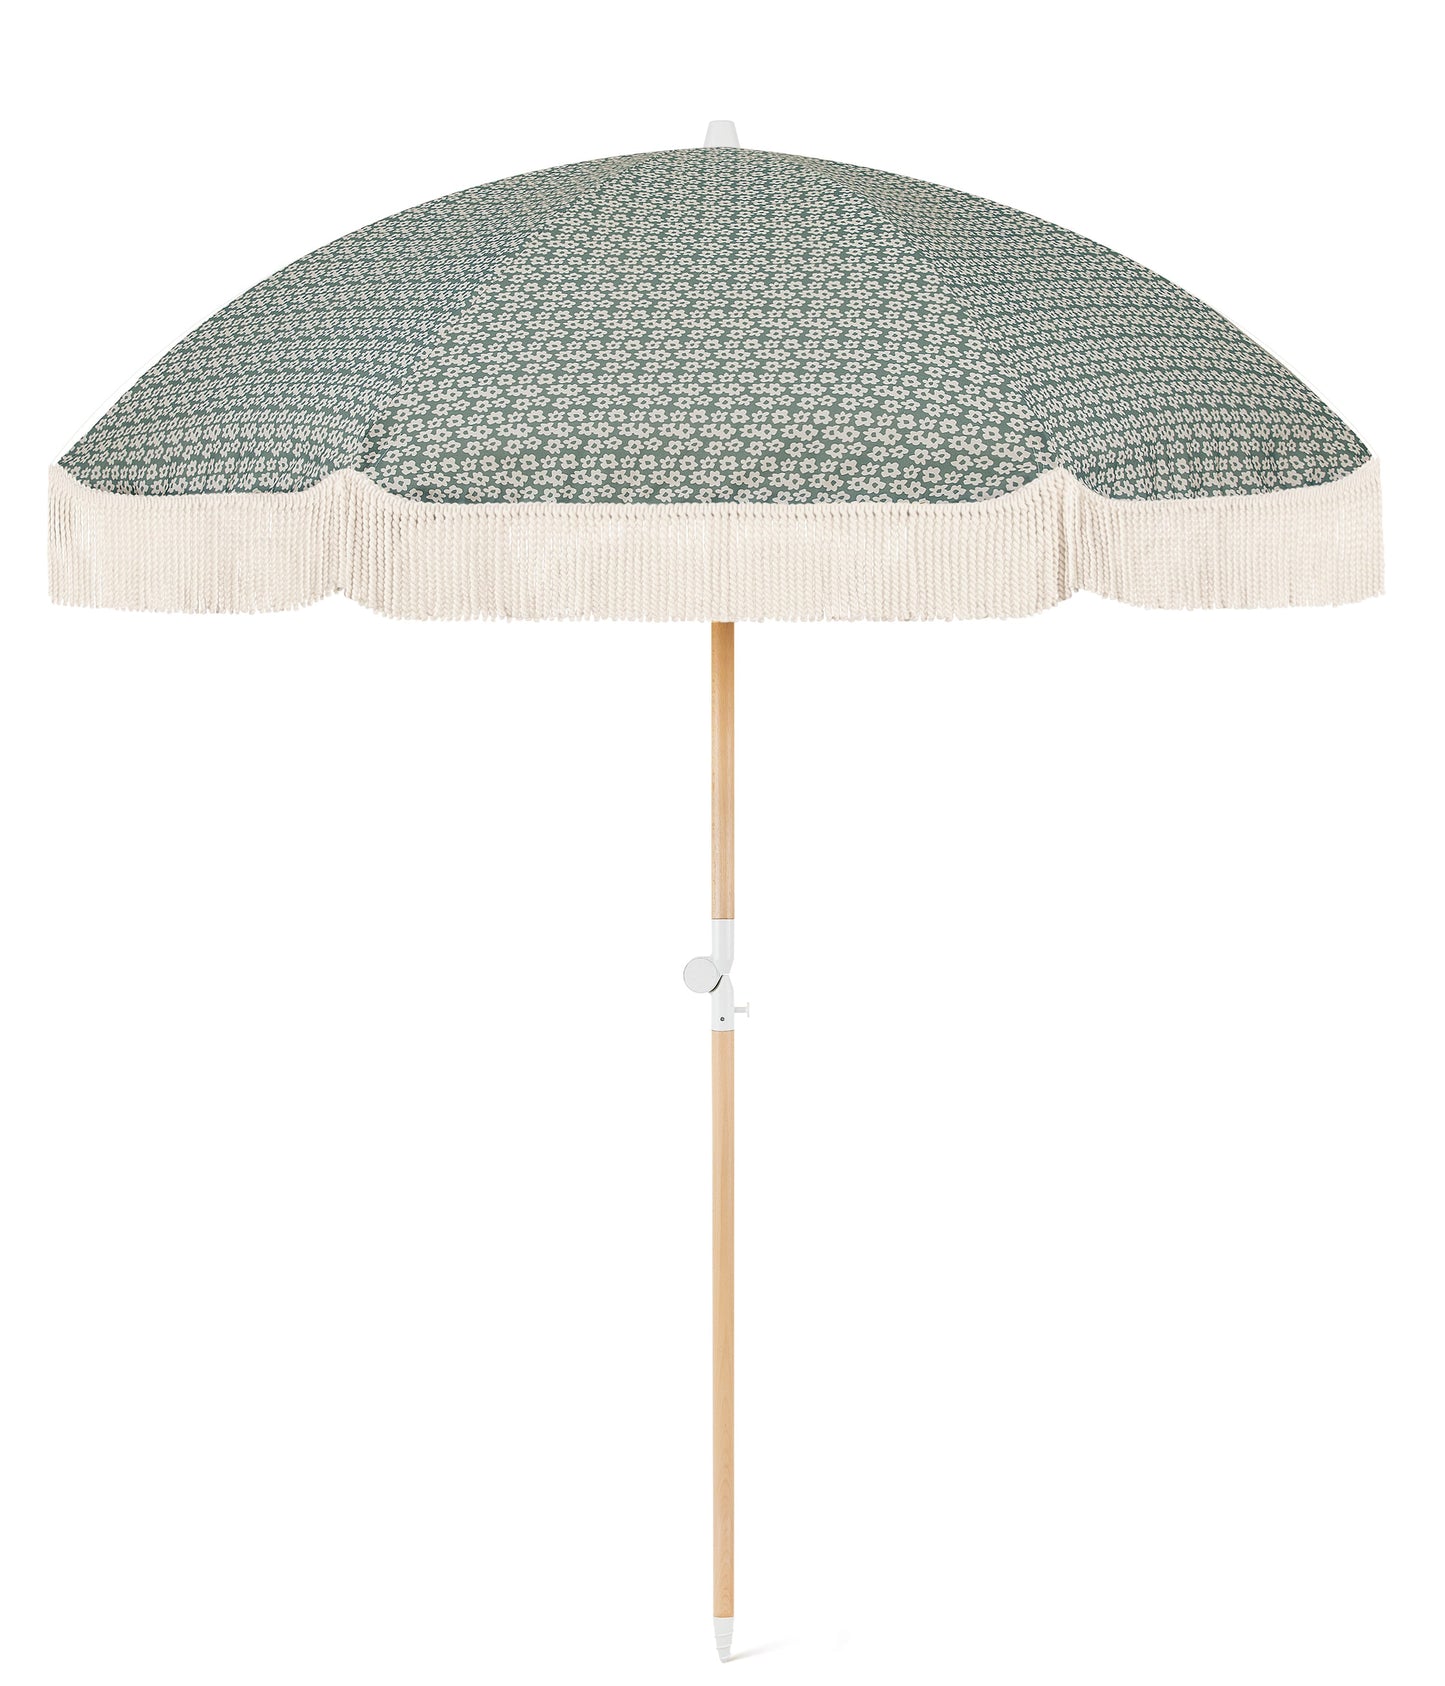 Tallow Flower Beach Umbrella